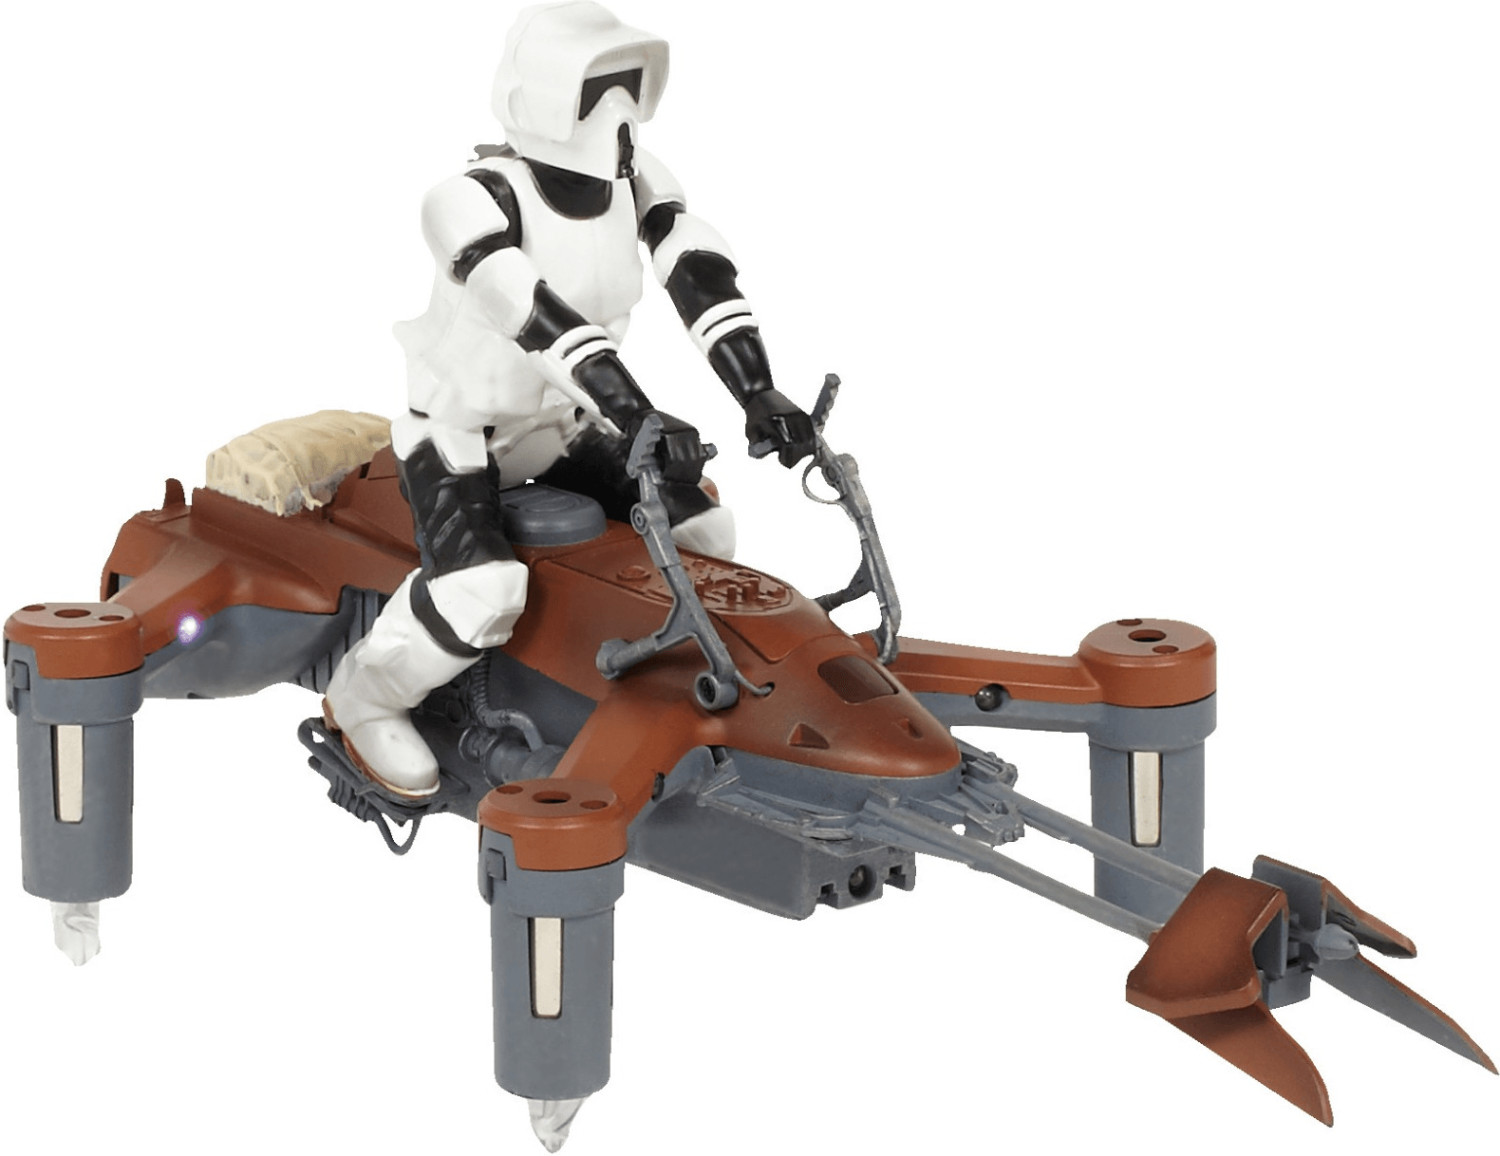 Propel Star Wars Speeder Bike Battle Drone Collectors Edition